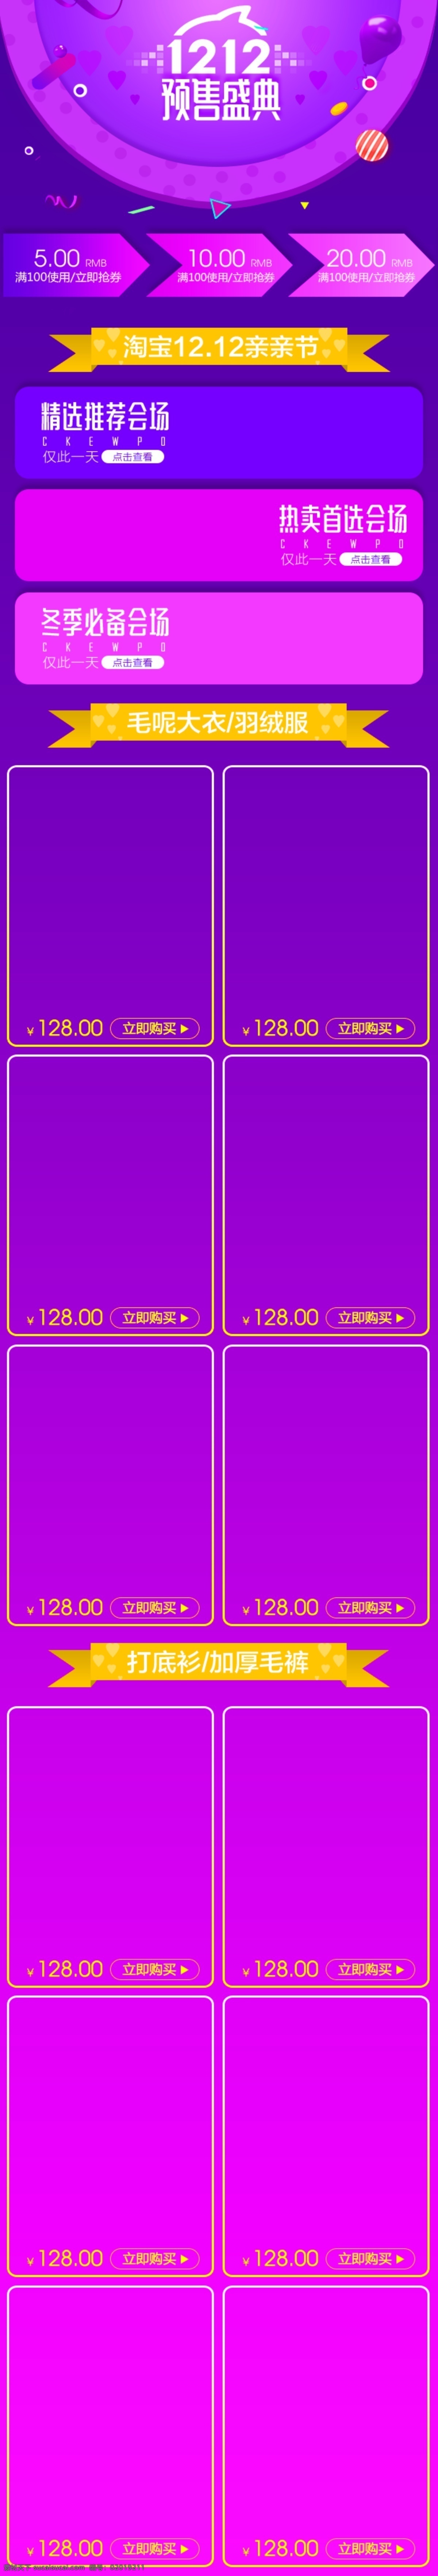 紫色 服装 天猫 双 手机 端 装修 模板 美观 预售 淘宝 店铺 无线